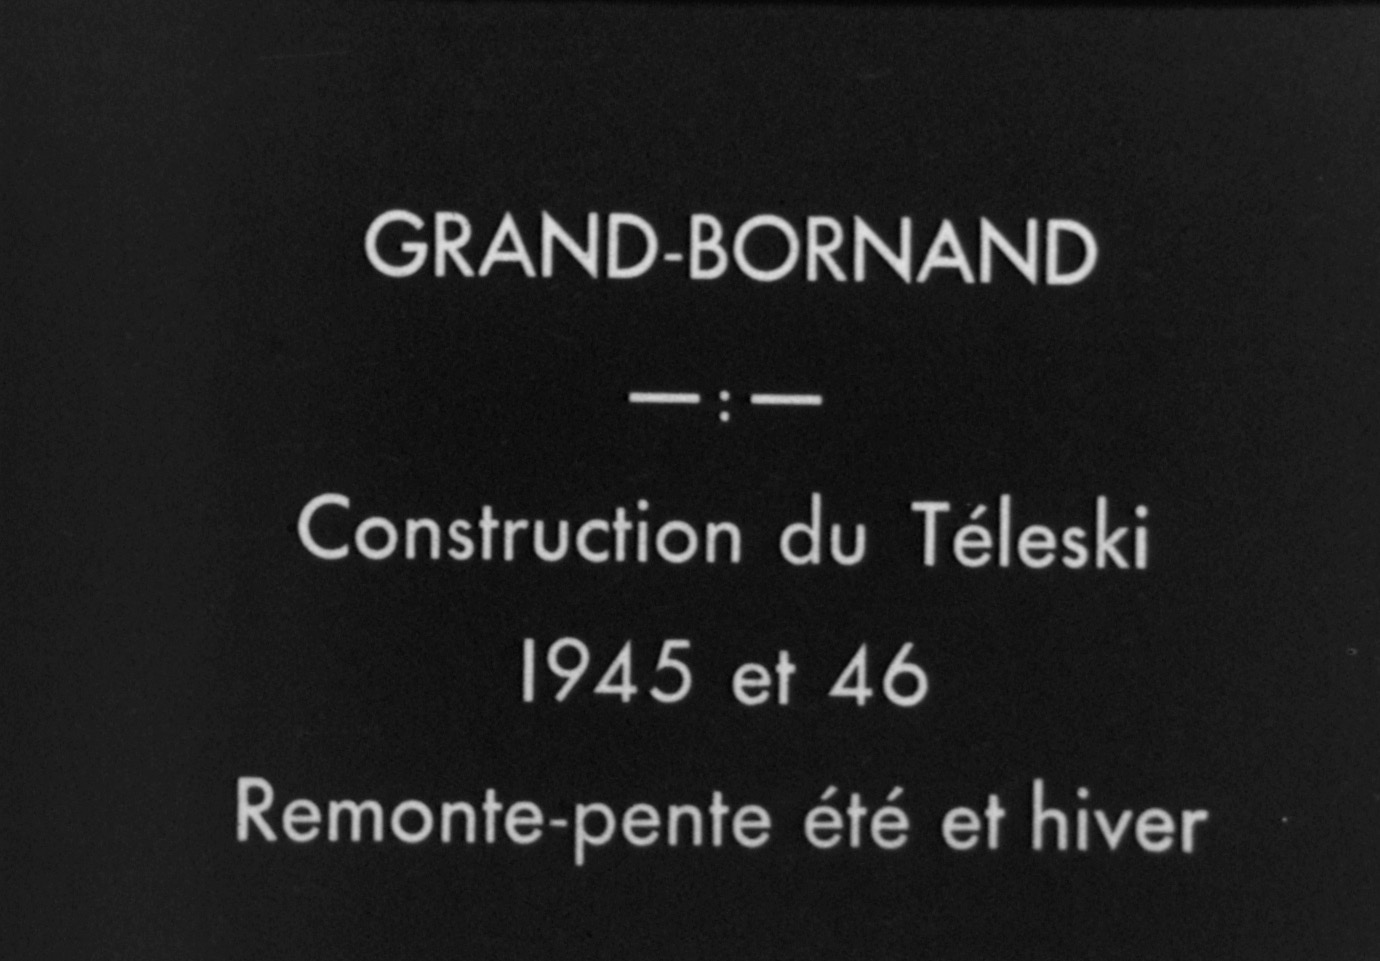 Construction du premier téléski au Grand-Bornand